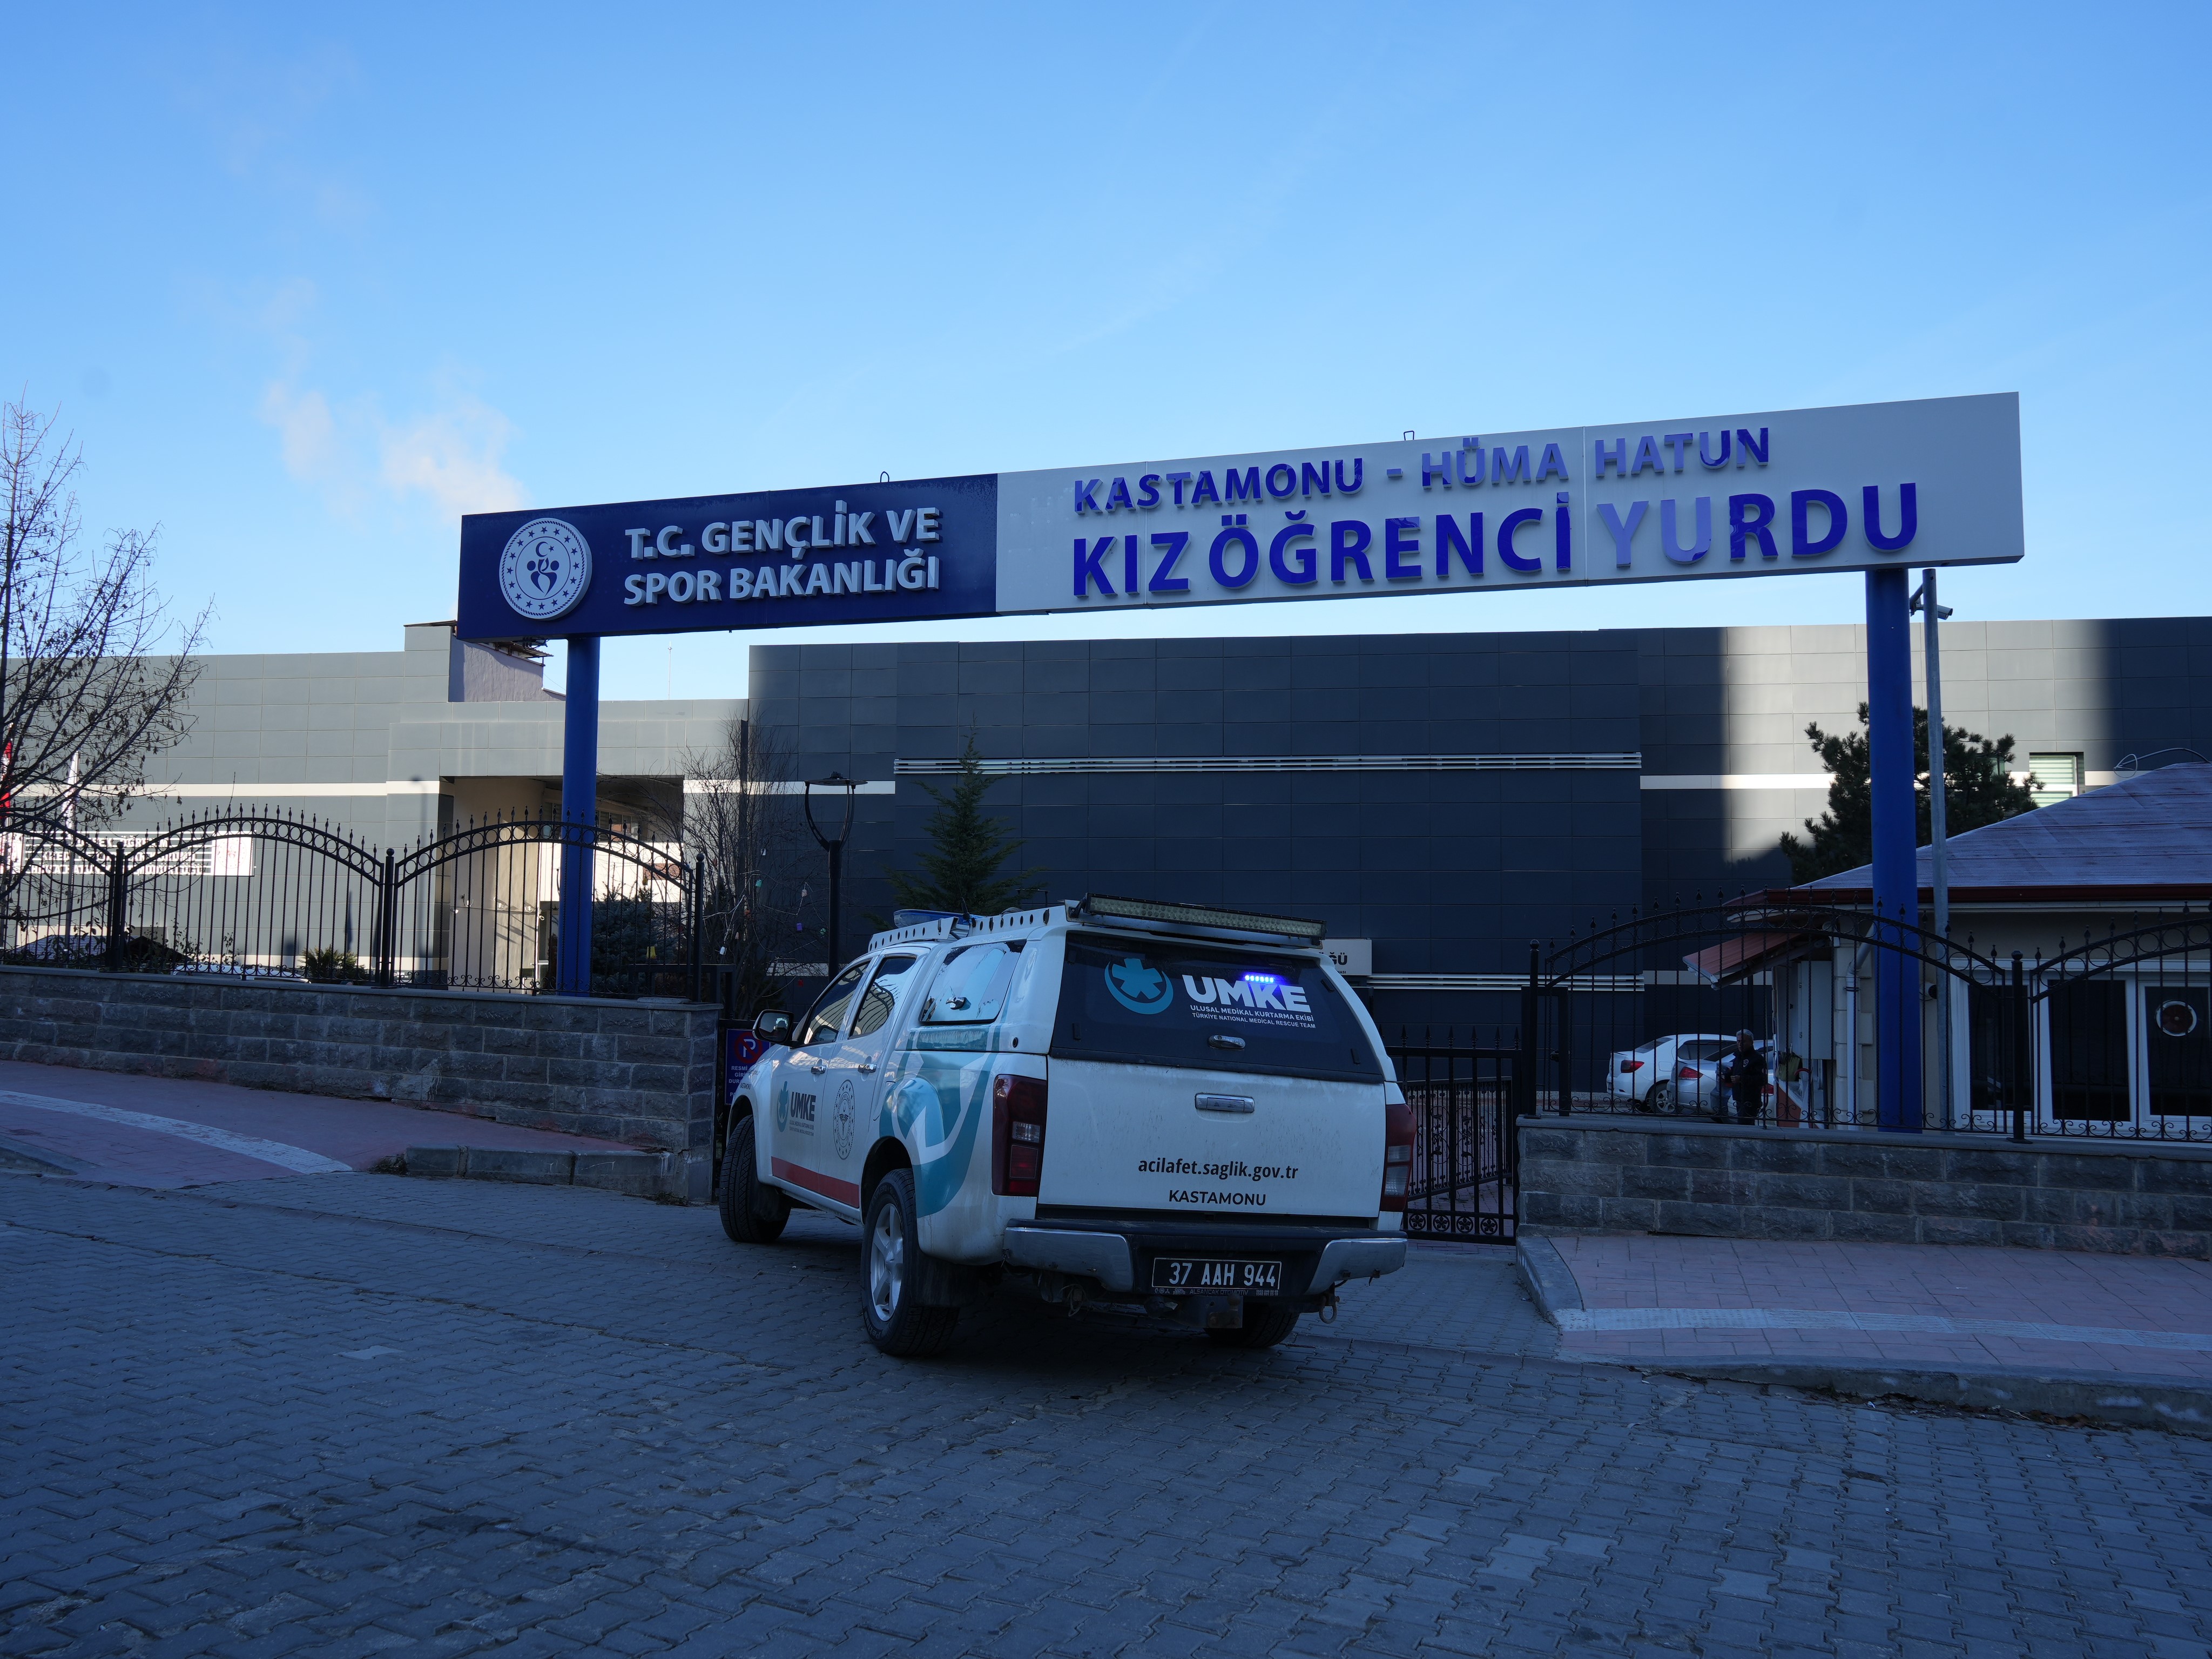 Kastamonu'da Tantuni Faciası! Öğrenciler Zehirlendi, Hastaneye Akın Etti! (11)